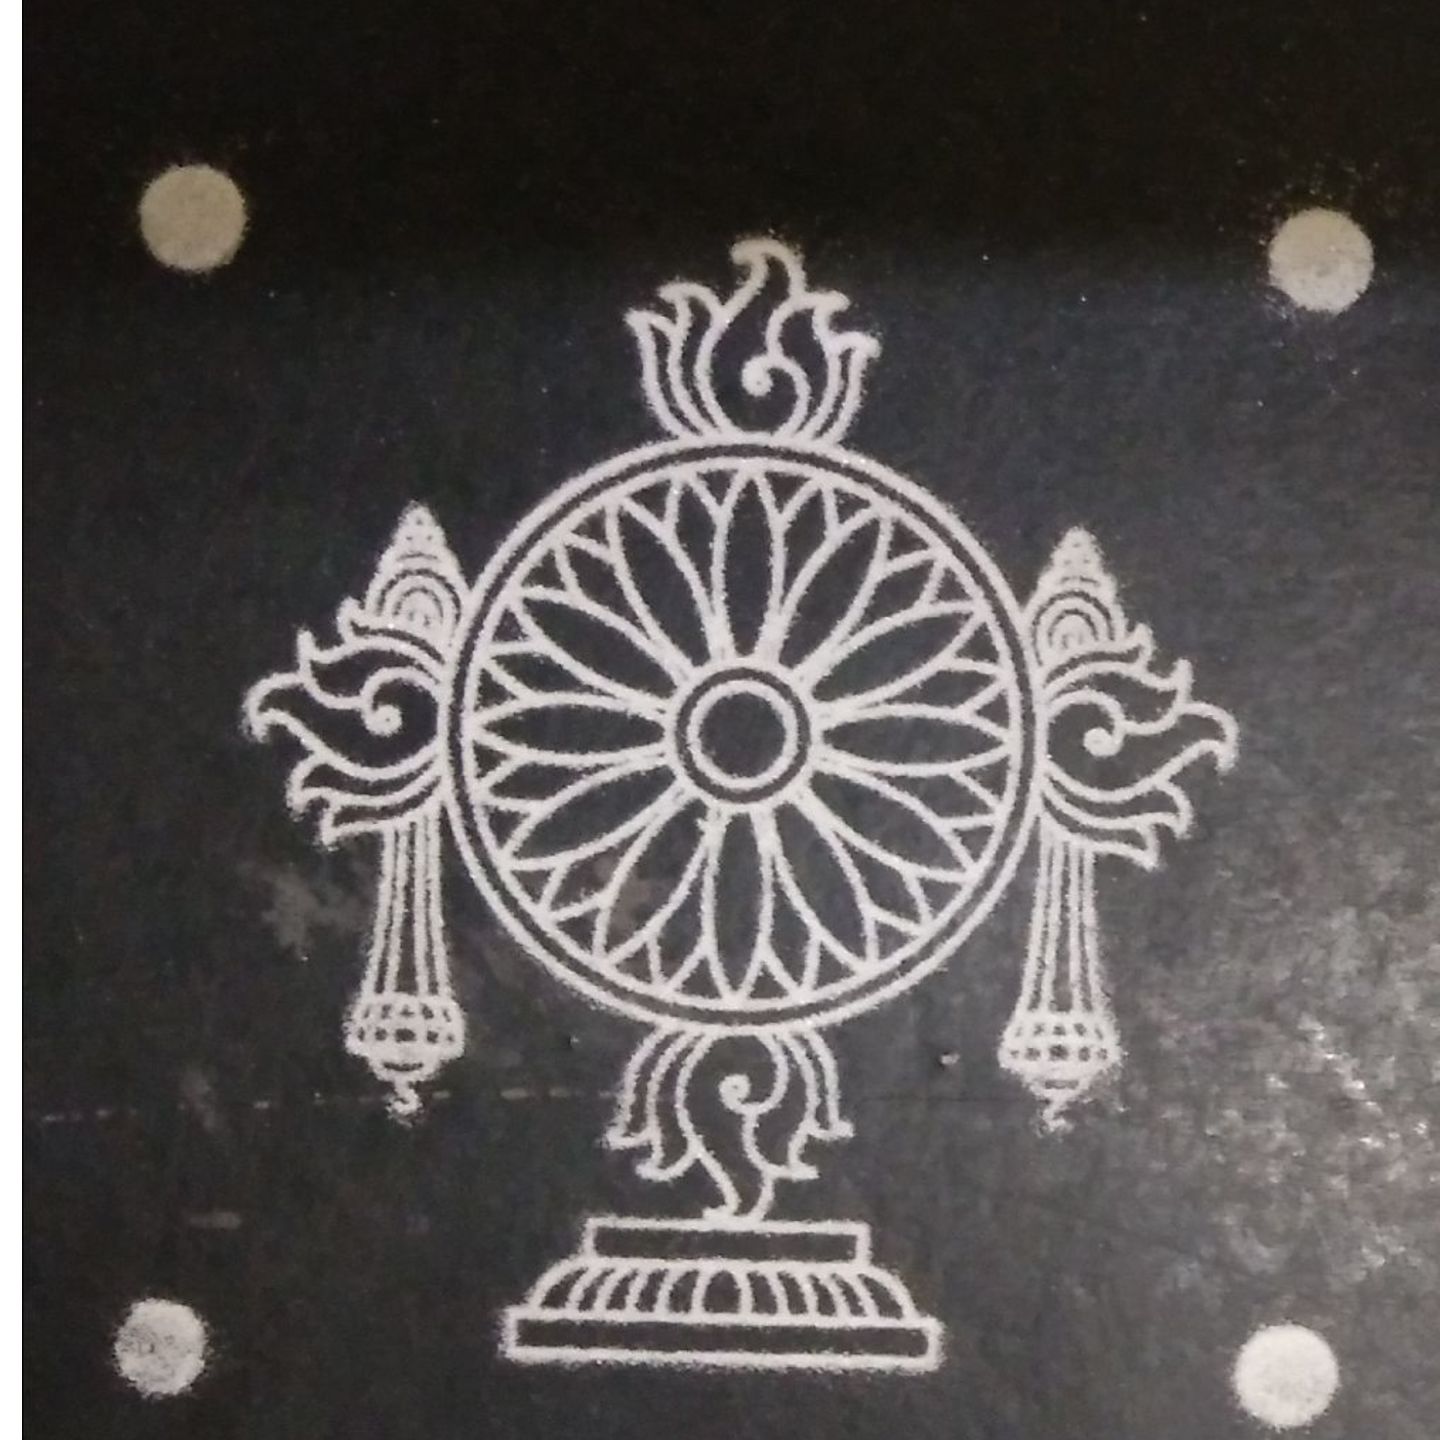 Tirupati balaji chakra Rangoli stencil 5 by 5 inch